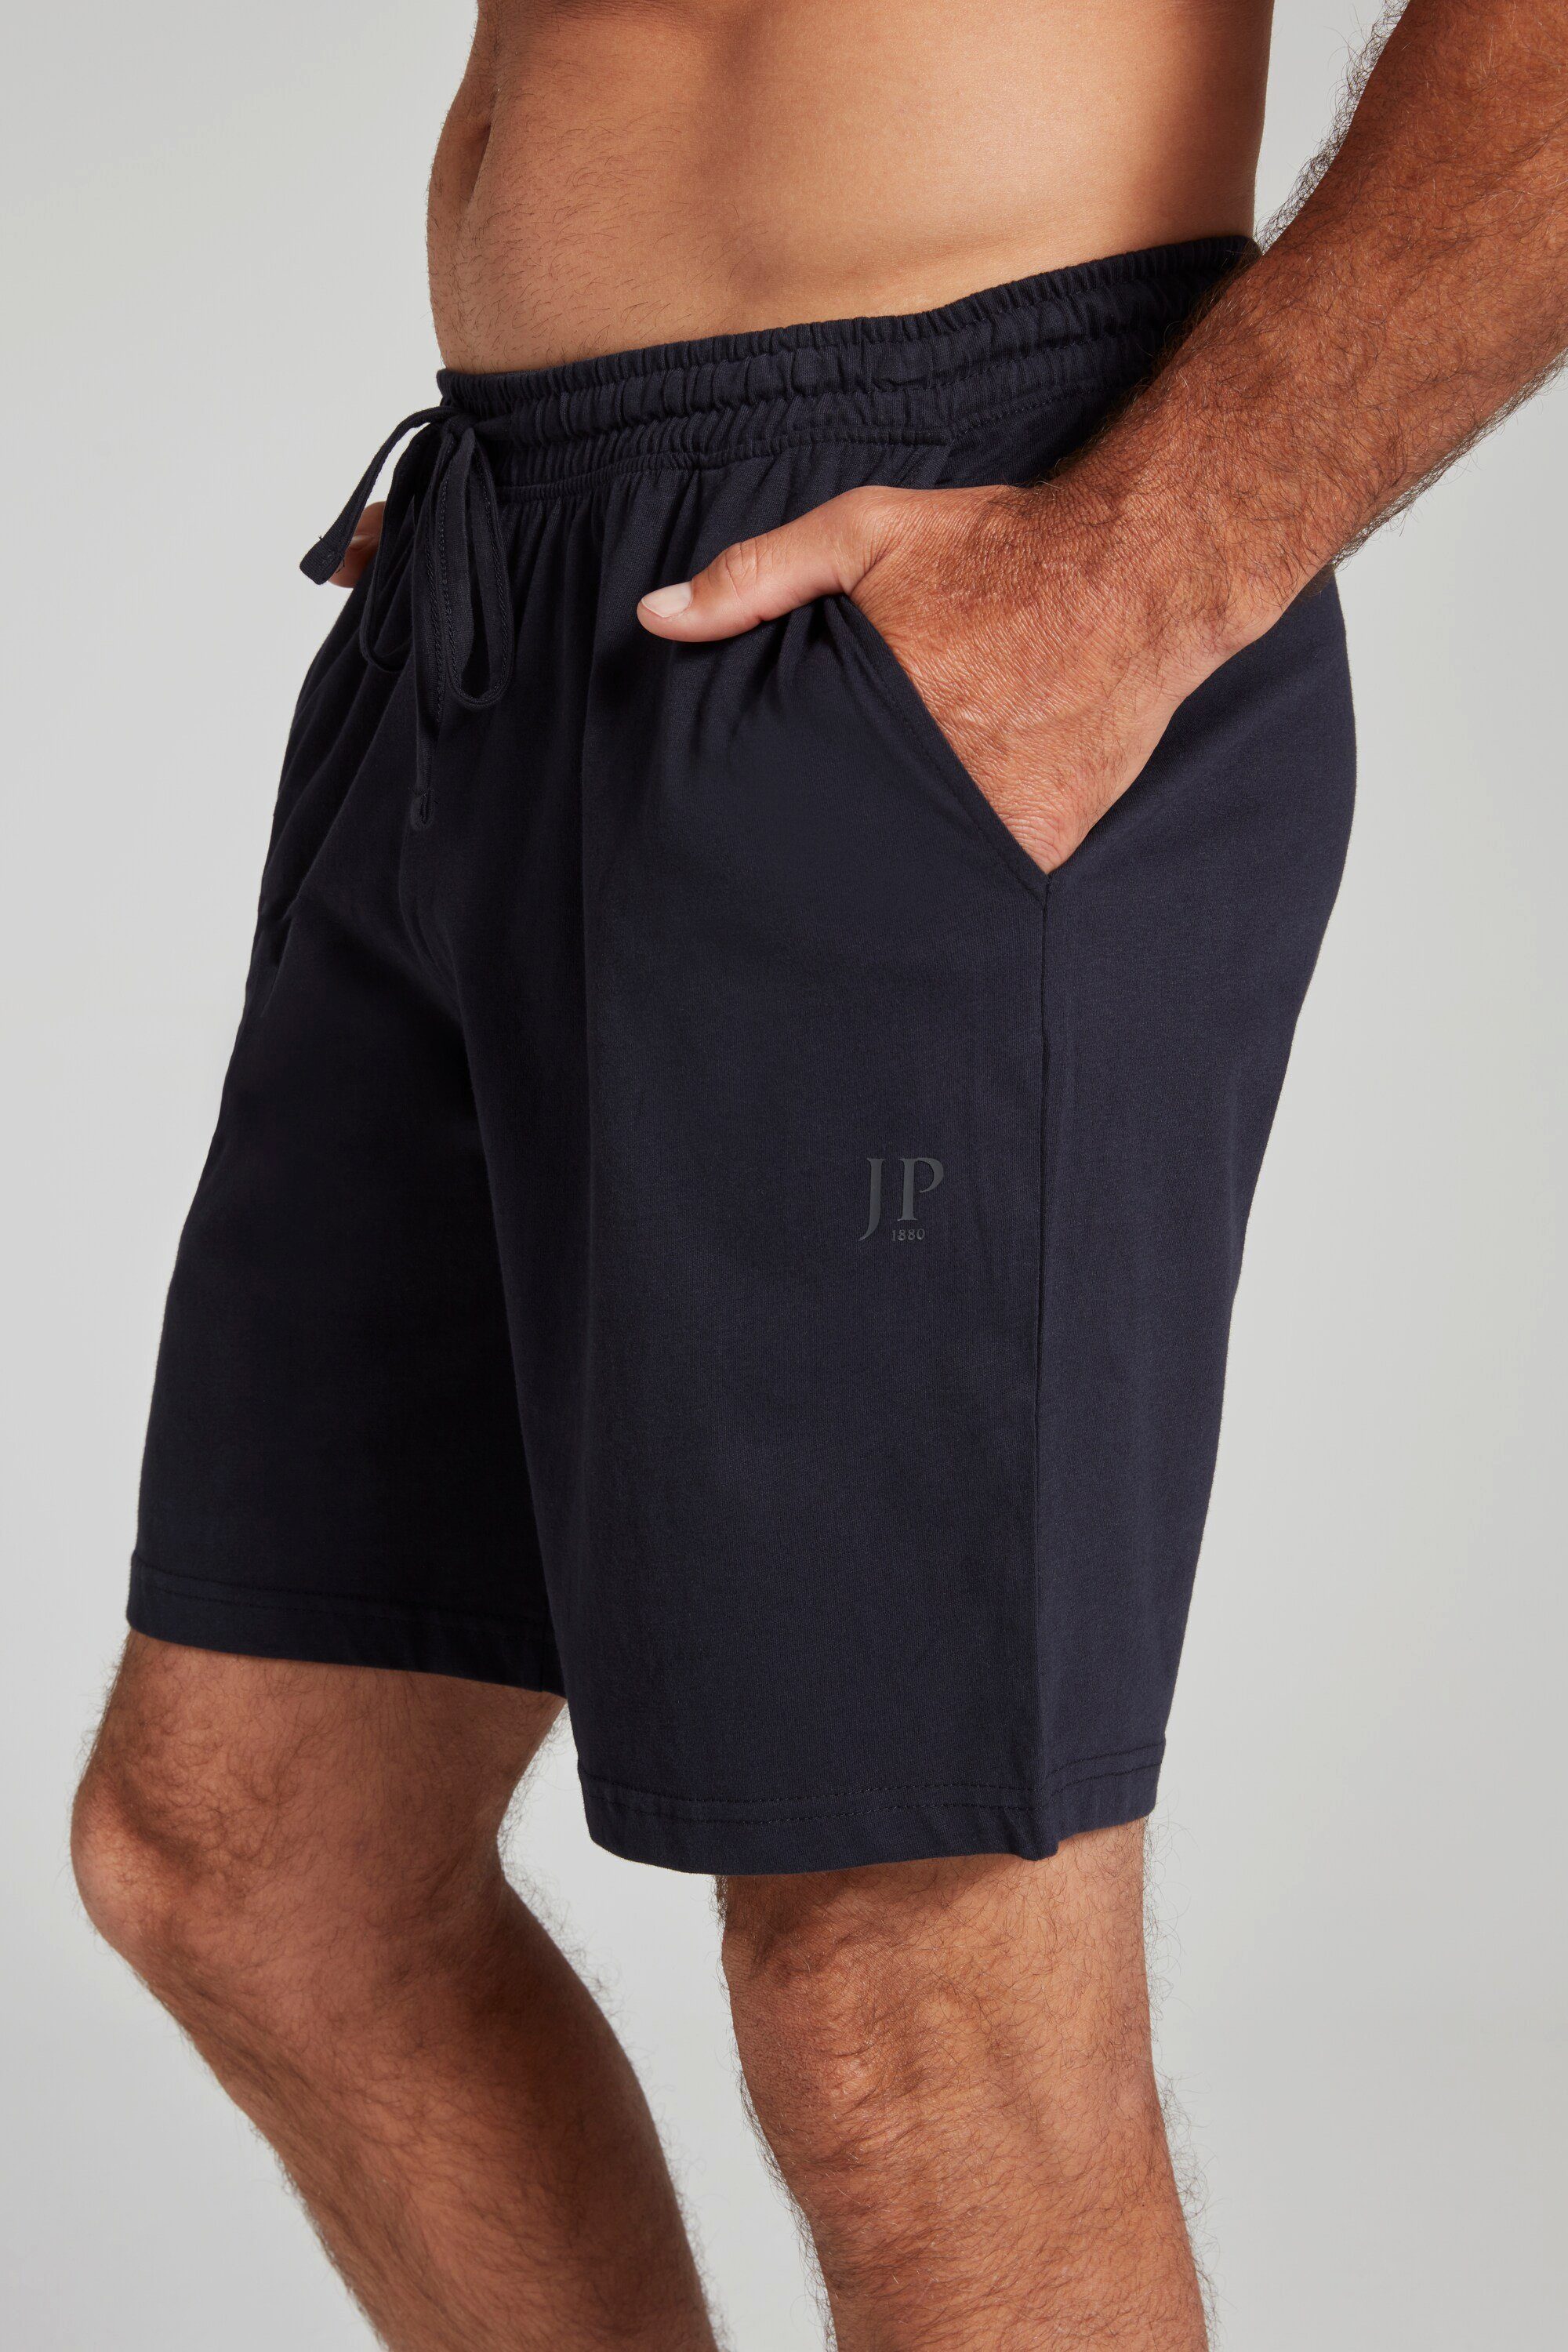 marine dunkel Elastikbund JP1880 Schlafanzug Homewear Shorts Schlafanzug Hose